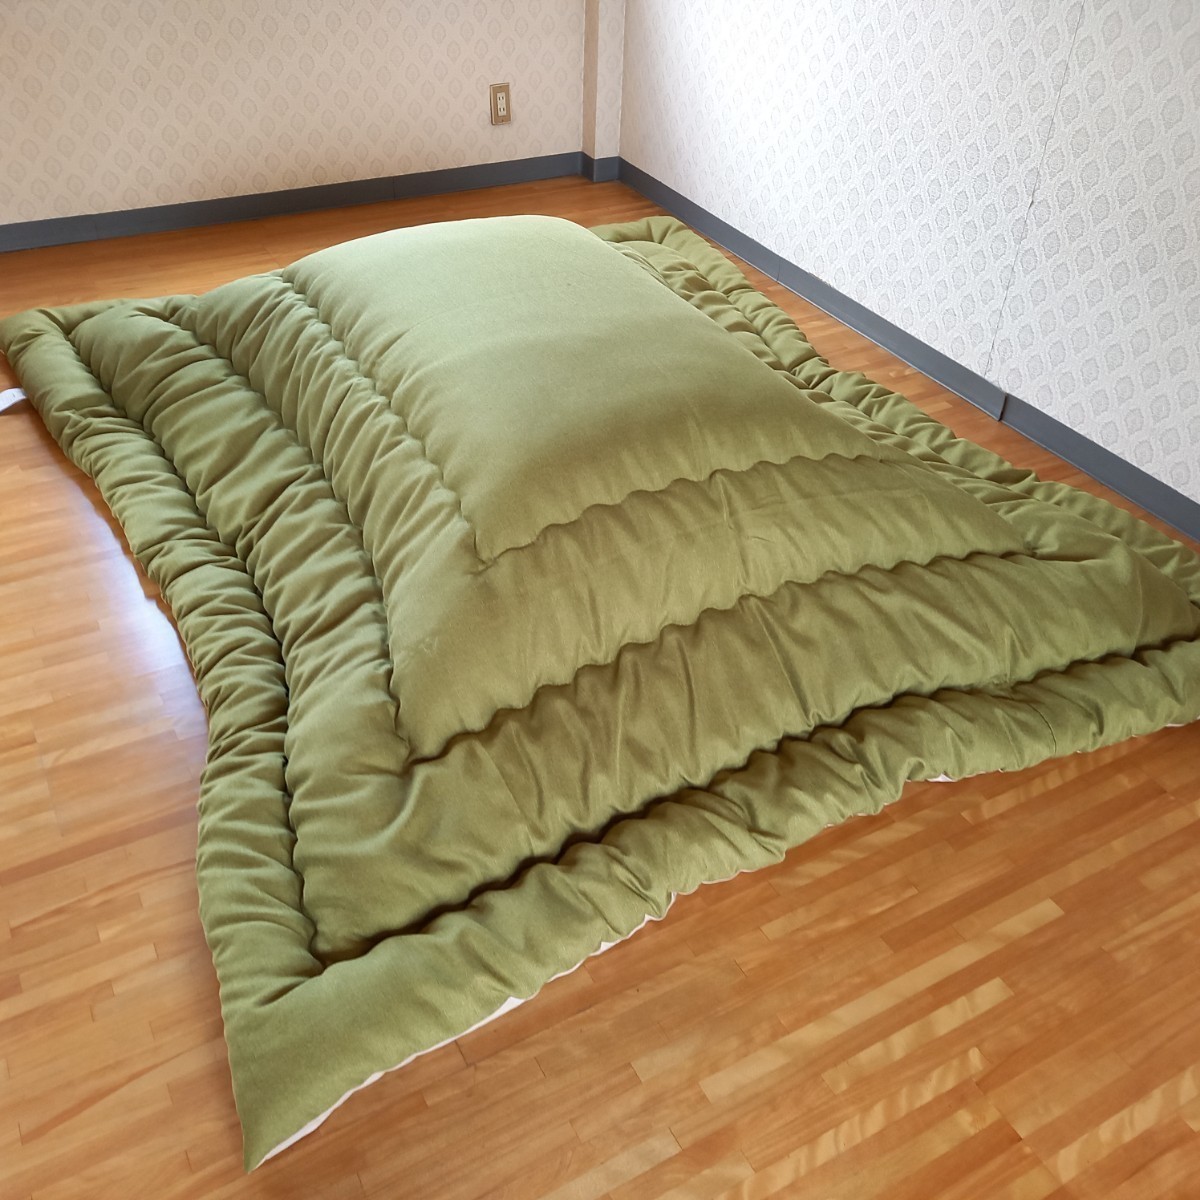  супер водоотталкивающая отделка котацу futon большой размер прямоугольный толстый ткань использование котацу ватное одеяло чистый безопасность сделано в Японии ( пуховый футон . futon матрас футон подушка ) выставляется.. зеленый 